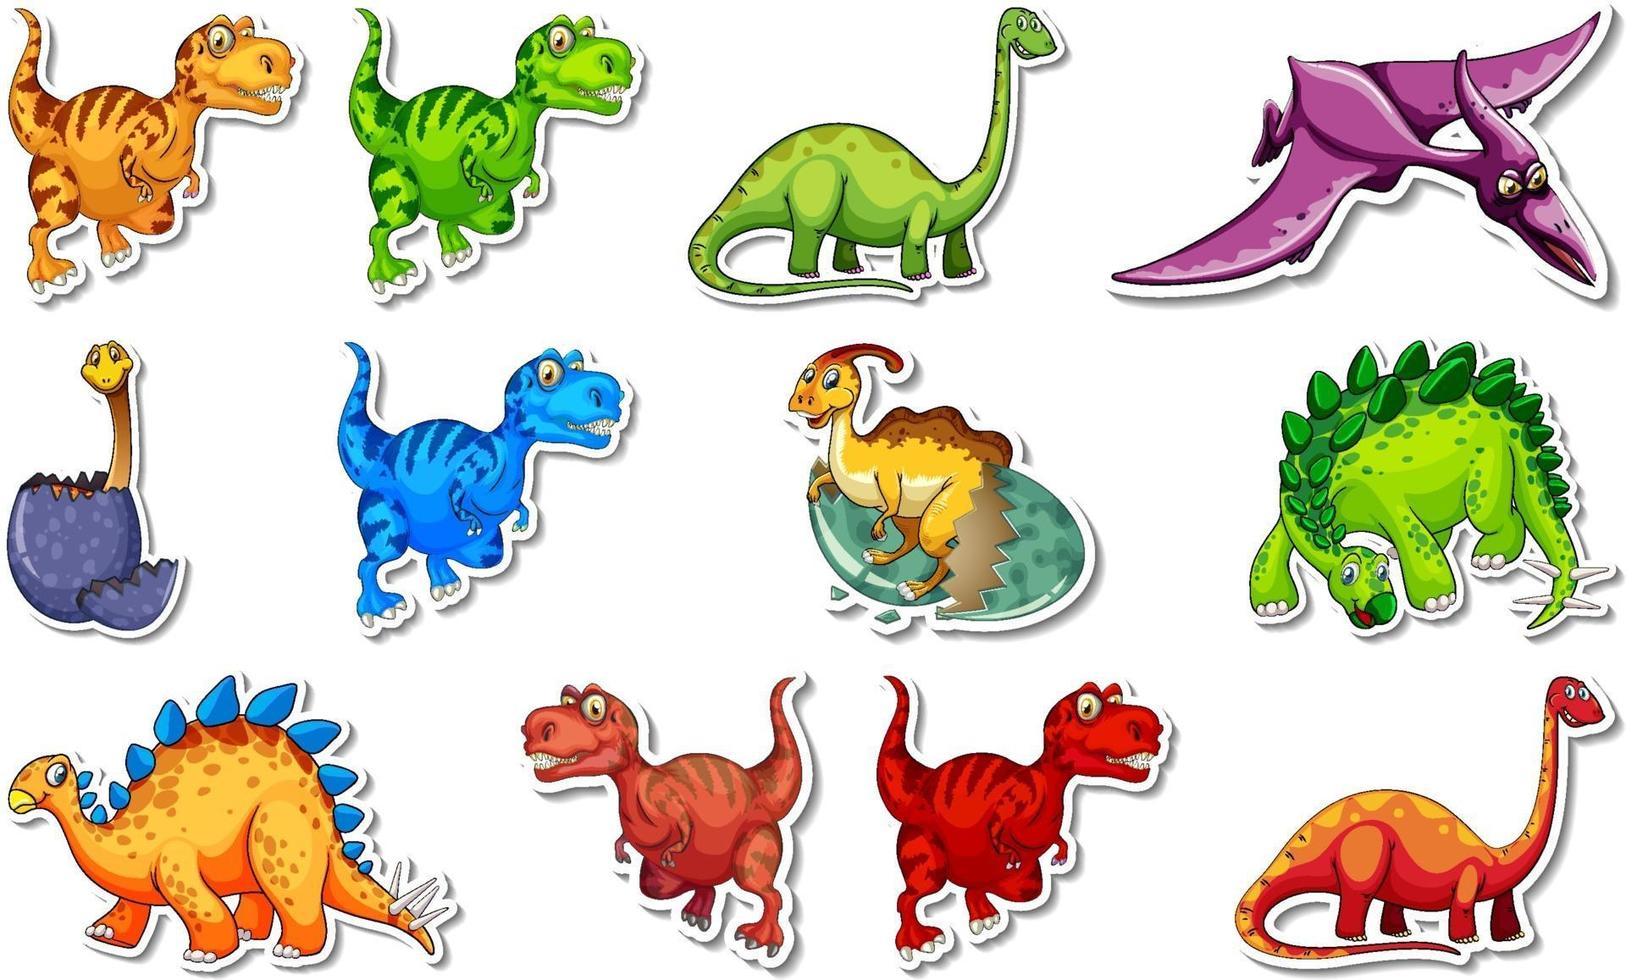 klistermärke med olika typer av dinosaurier vektor